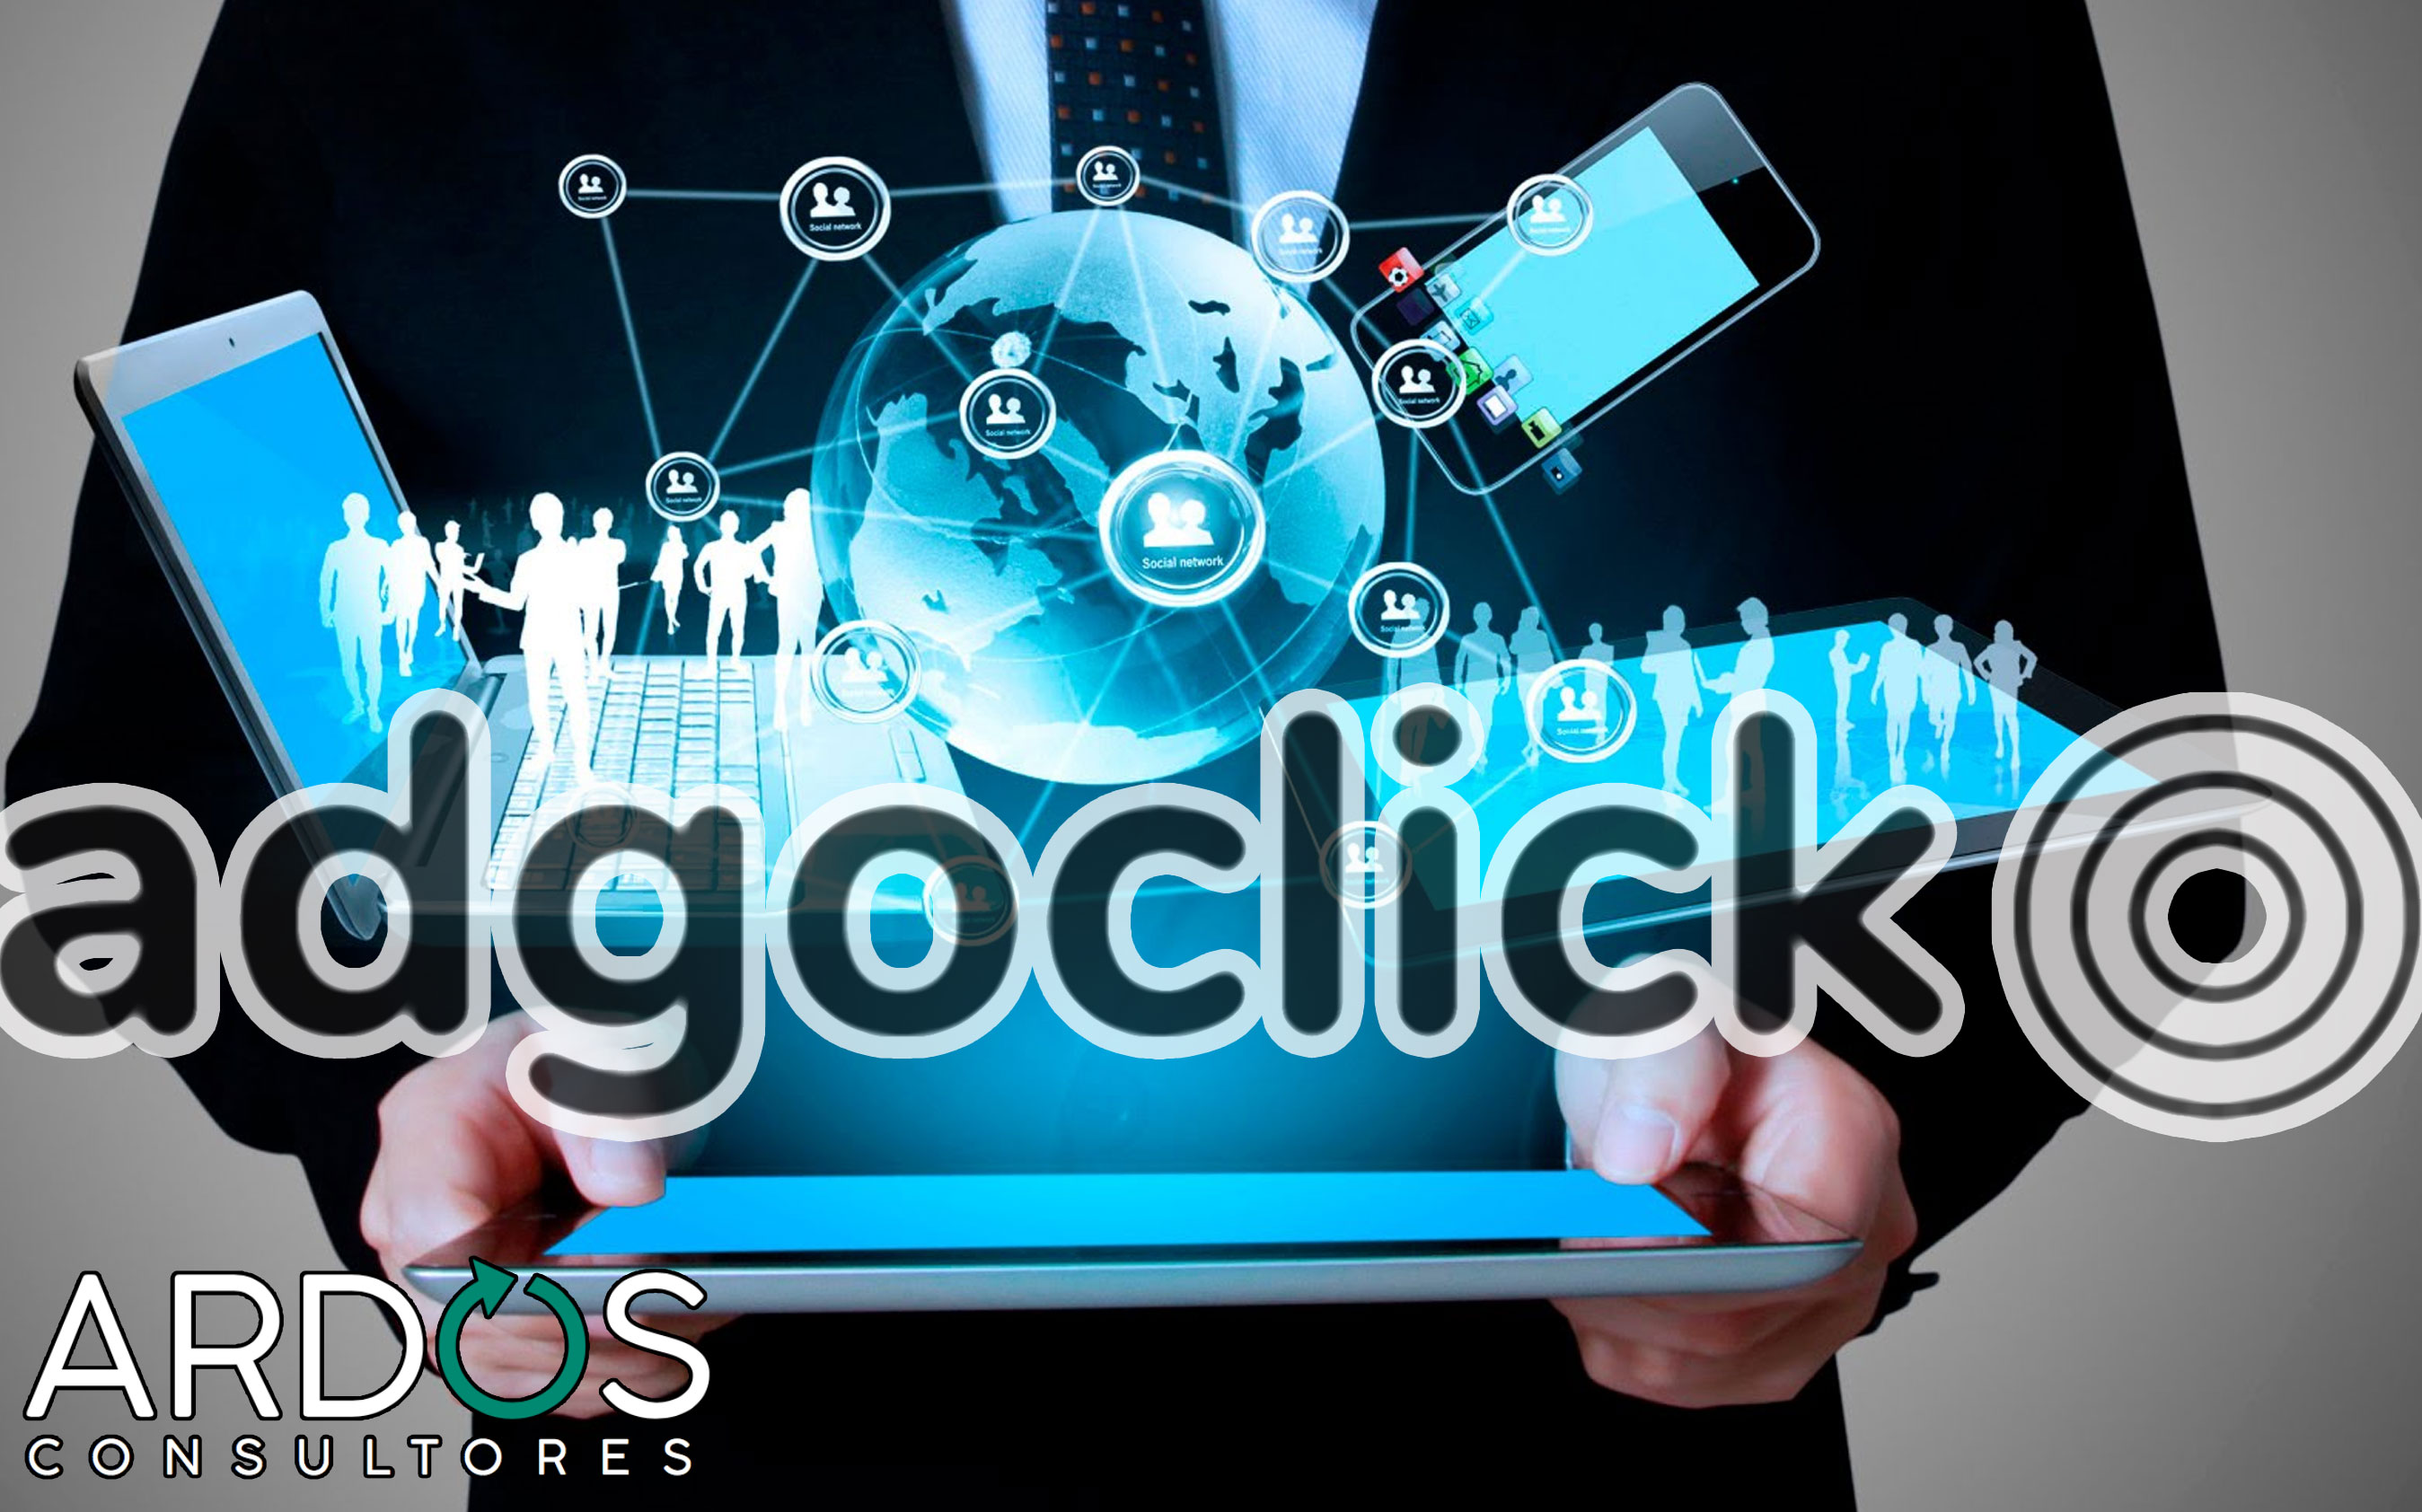 Adgoclick puede mejorar tu posicionamiento web - ardos consultores